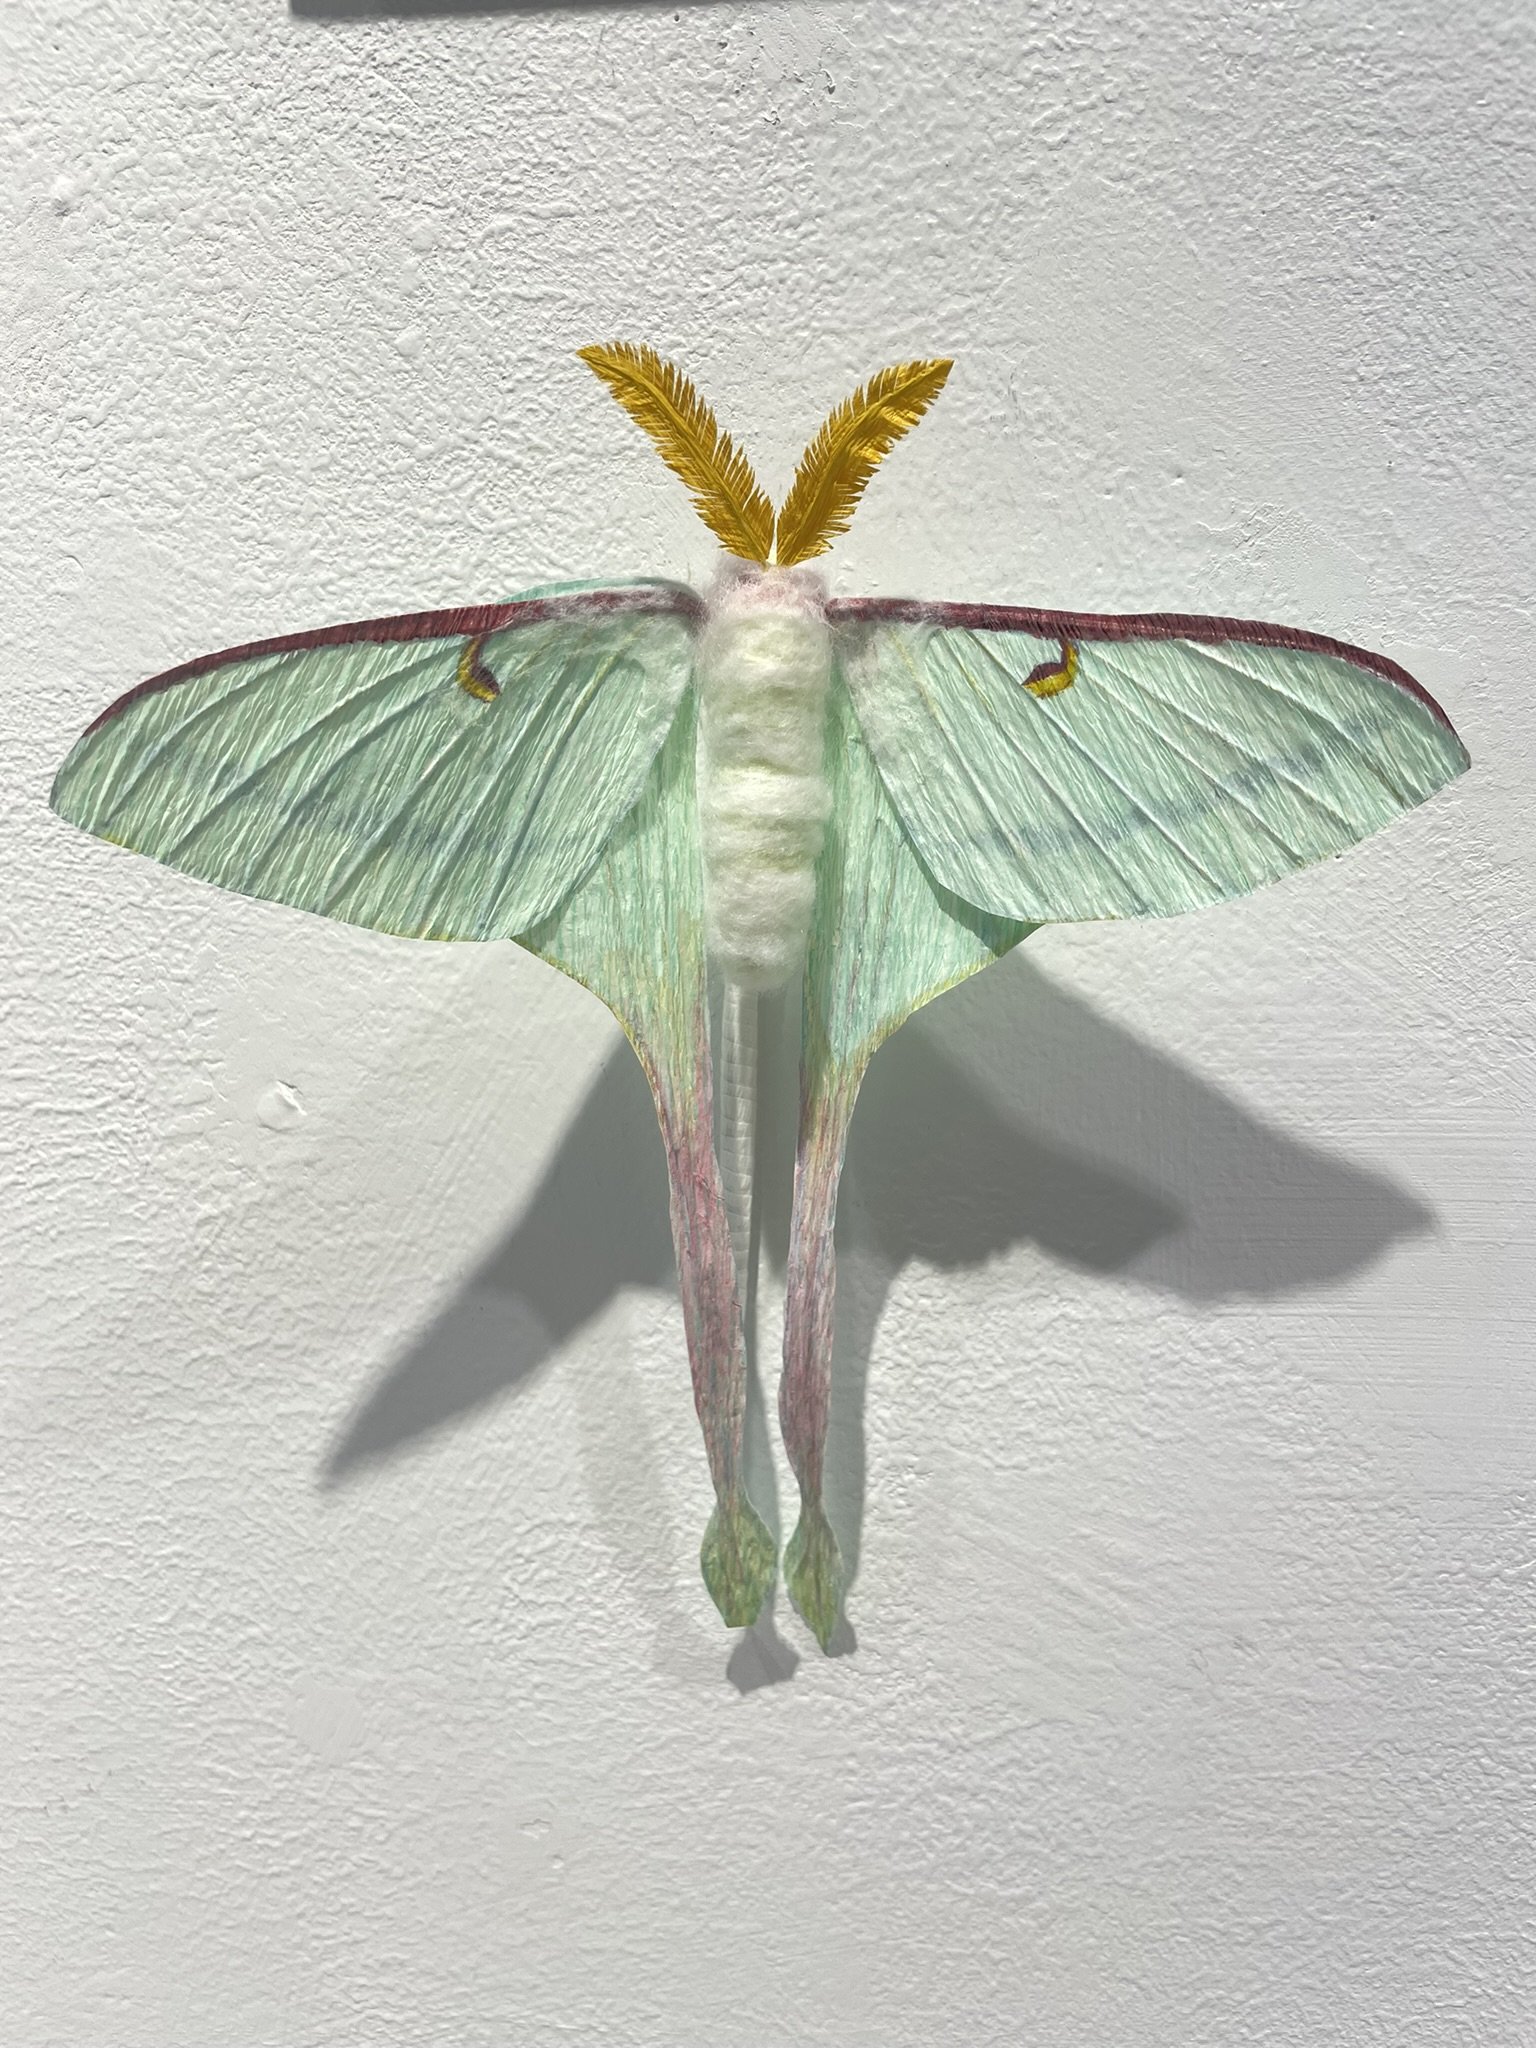 Luna Moth by Yang Liu